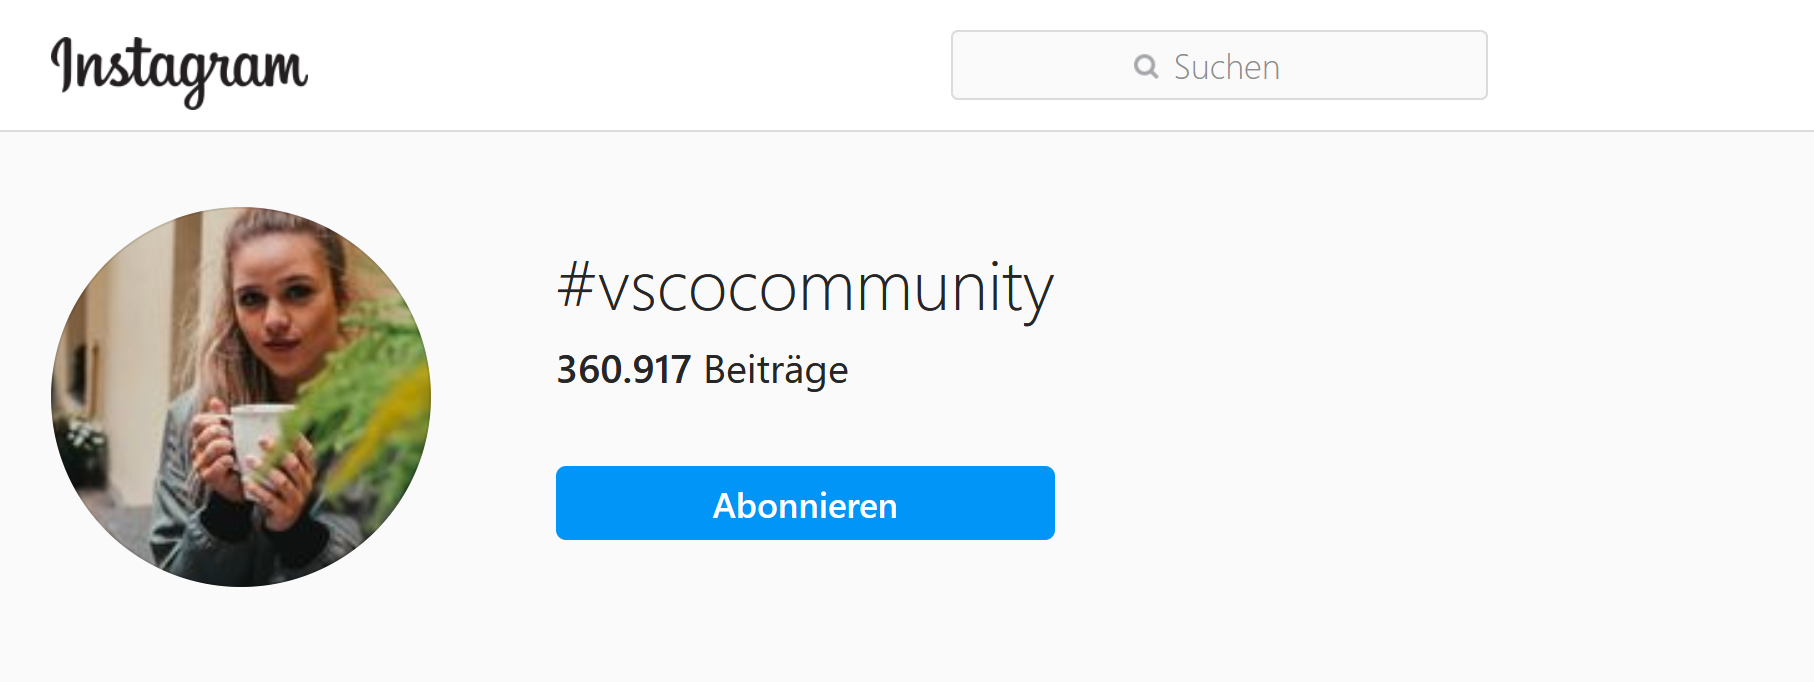 Hashtags: Vscocommunity